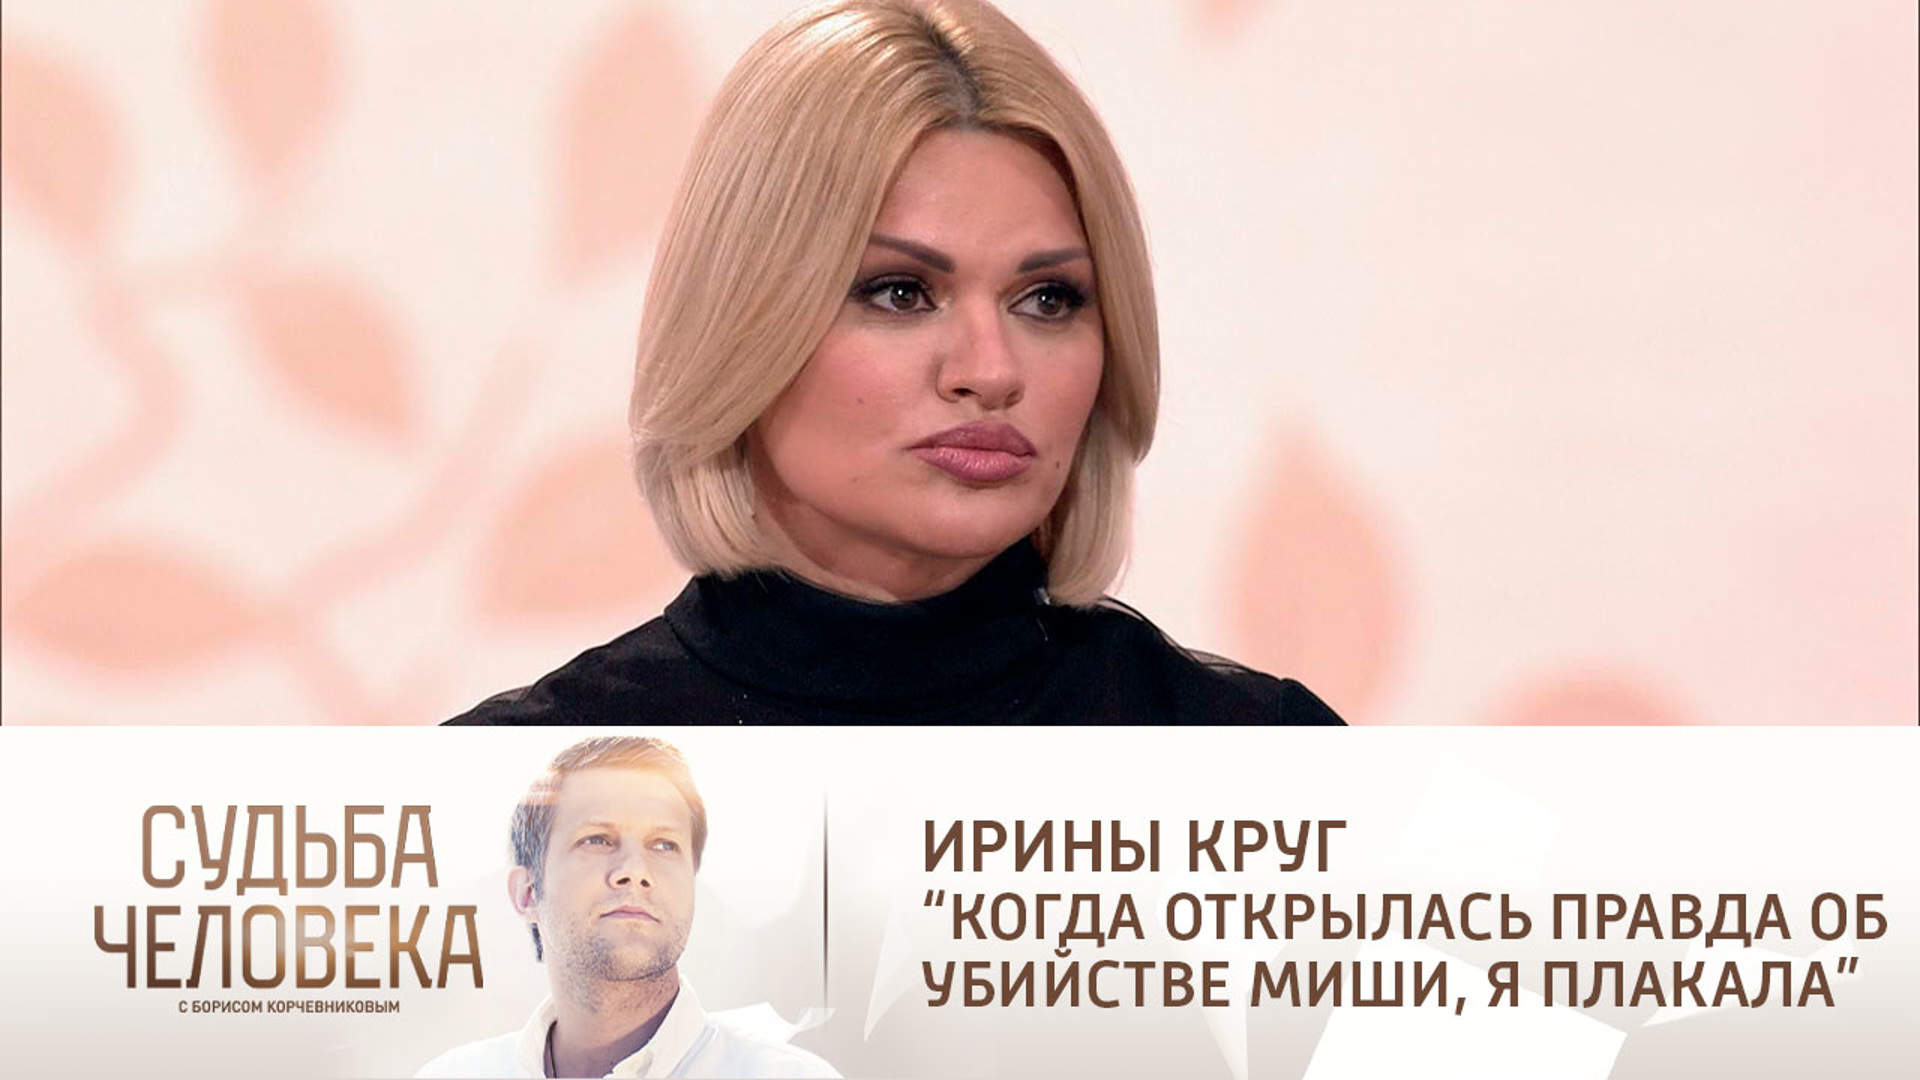 Судьба человека с Борисом Корчевниковым Ирина круг 2021